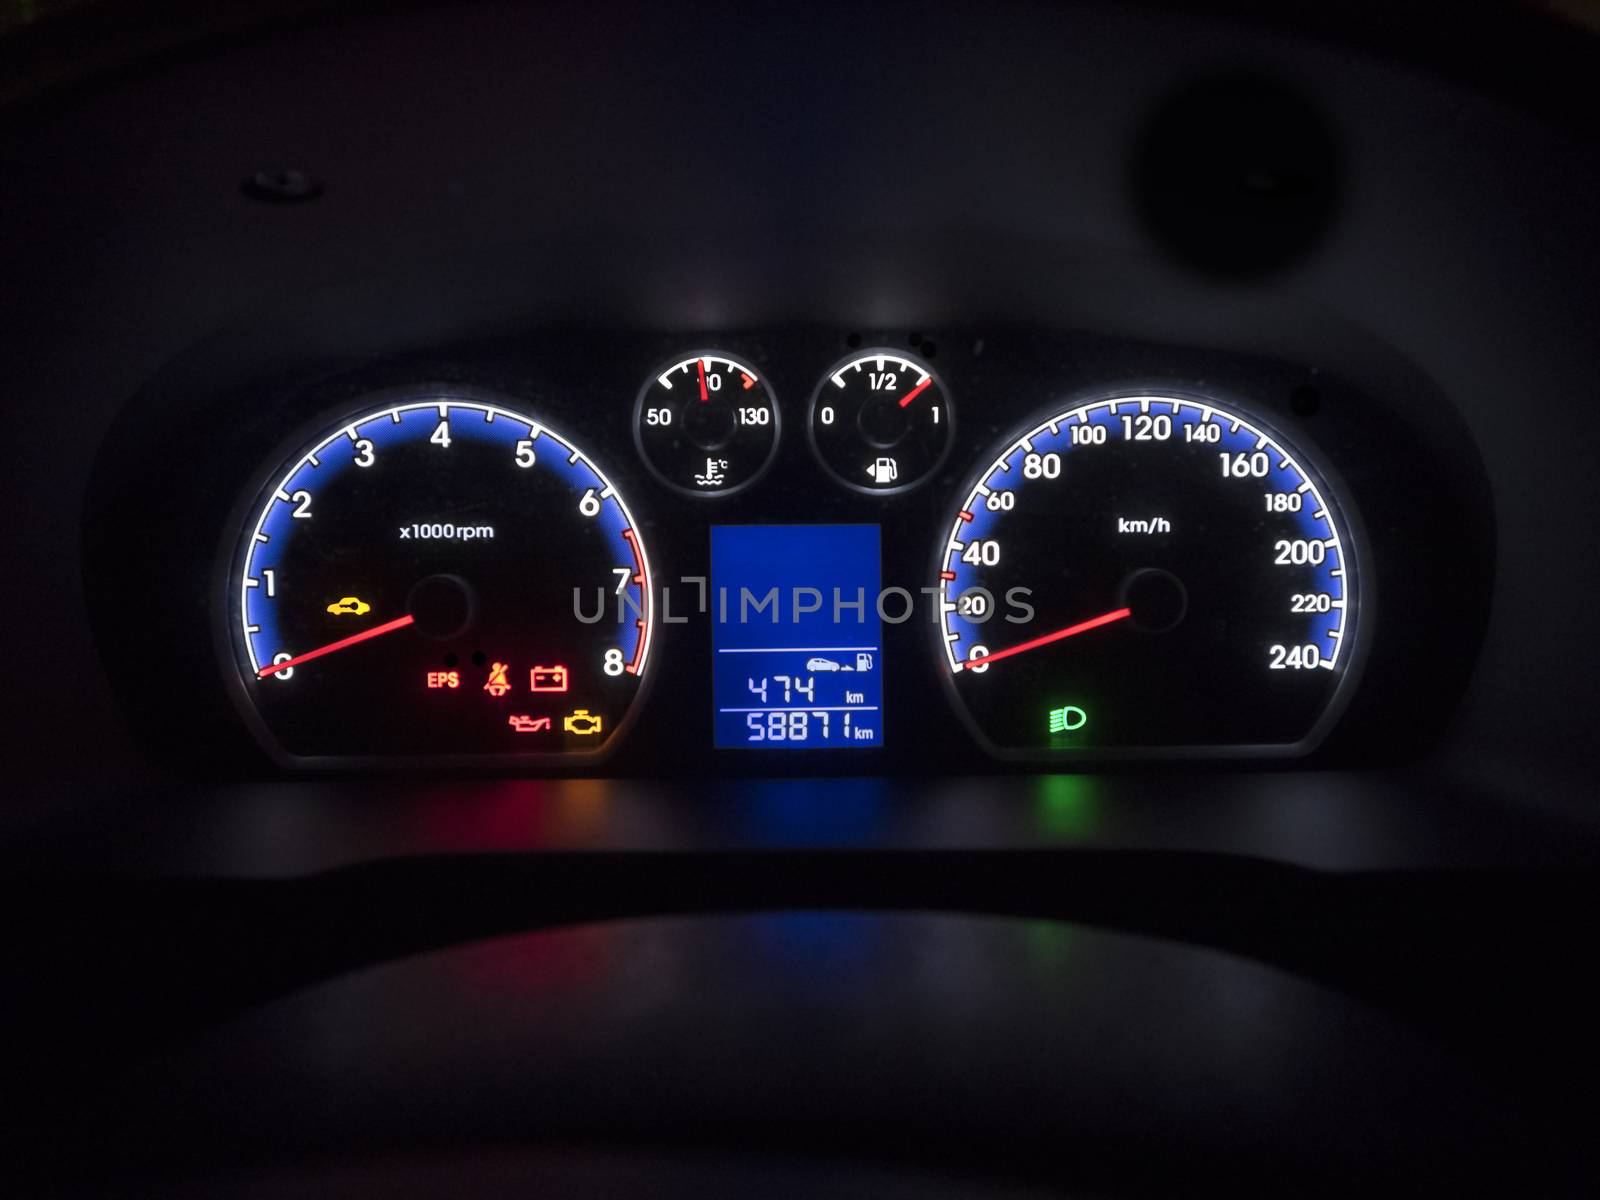 illuminated car dashboard. by f/2sumicron